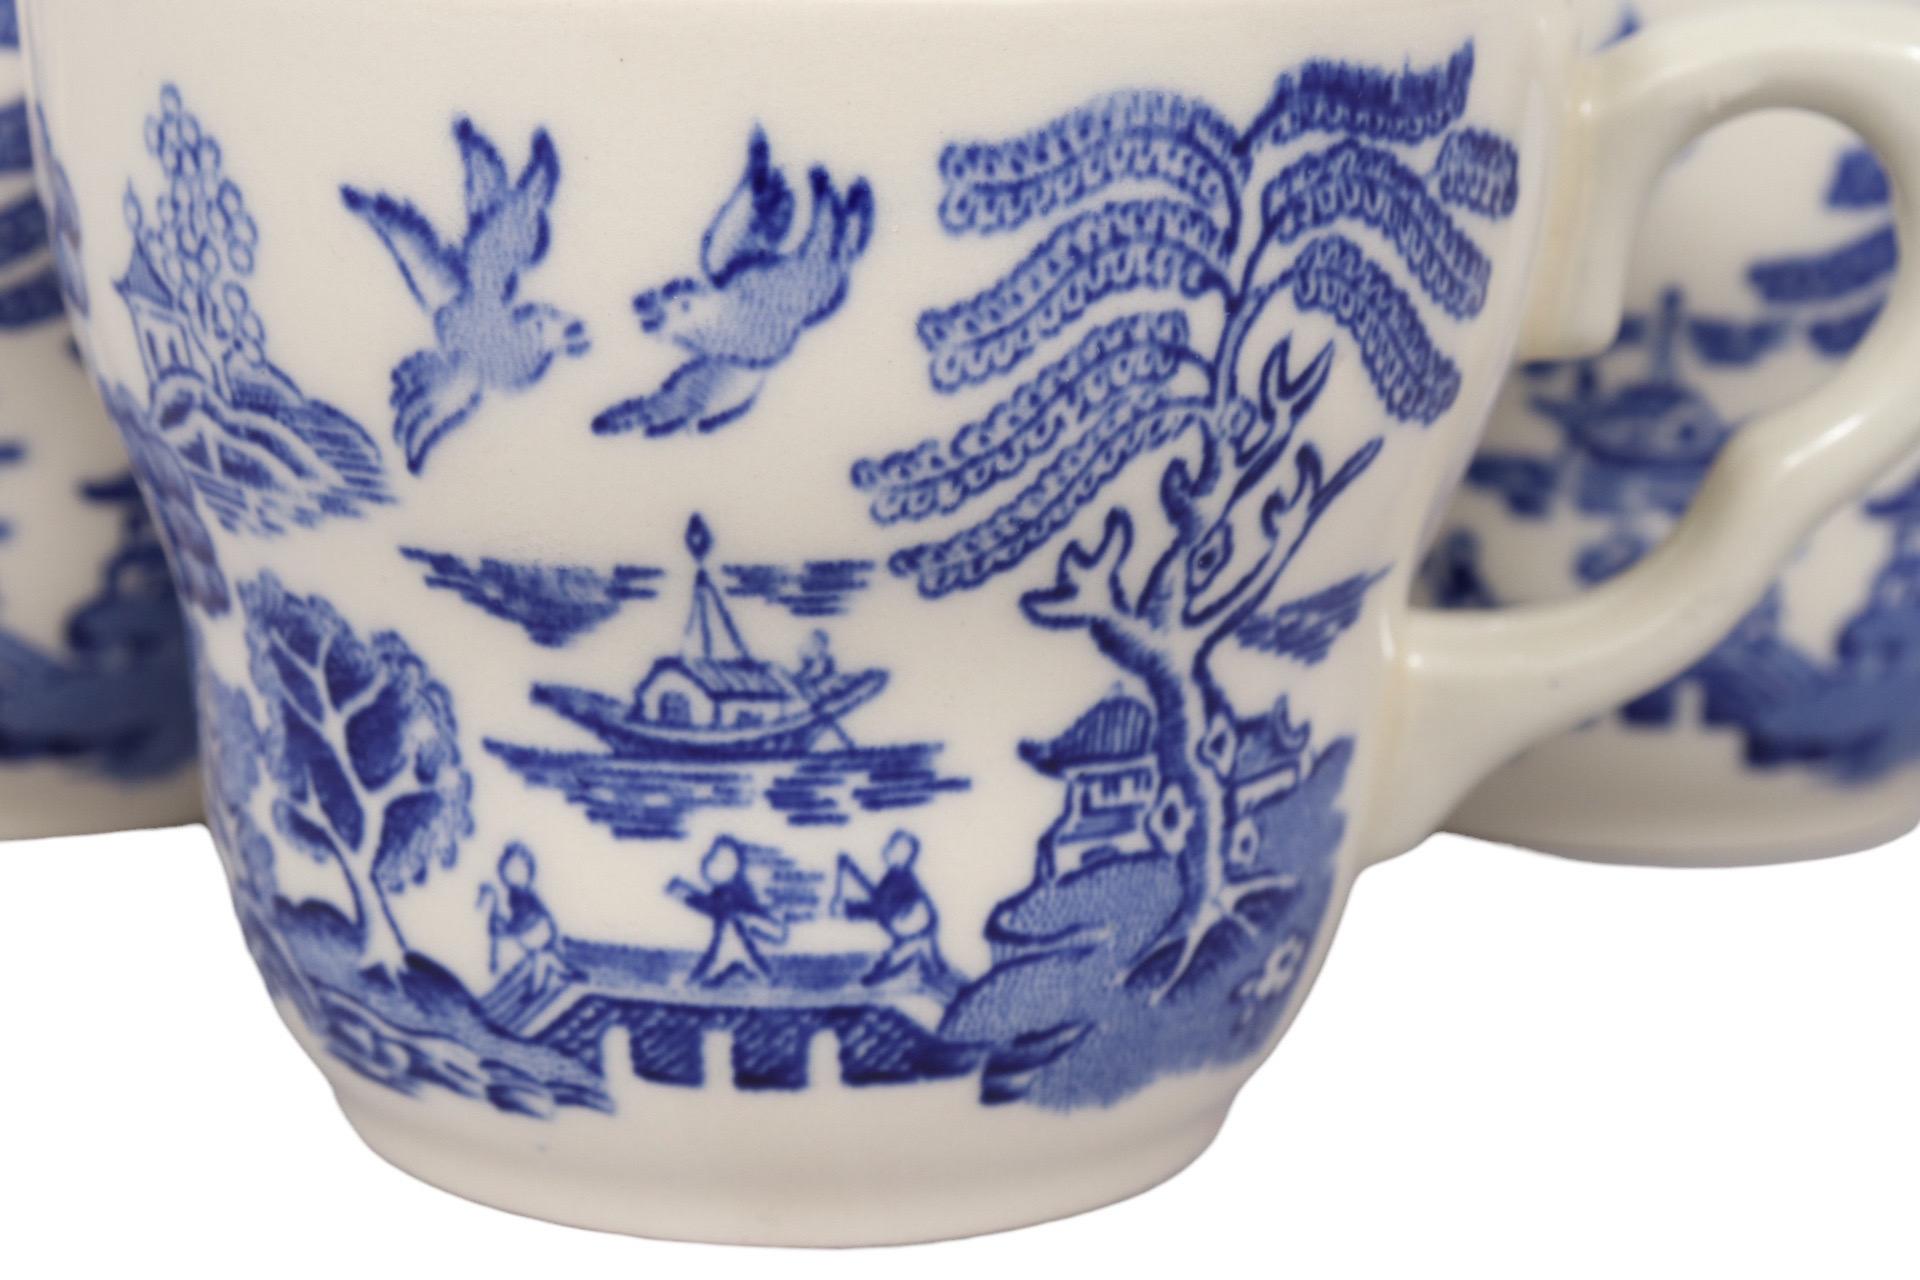 Ein Satz von acht blau-weißen Teetassen aus Transferware-Keramik, die an den Eisenstein der Gebrüder Johnson erinnern, hergestellt von English Ironstone Tableware Ltd. in Staffordshire. Die formschönen Tassen mit Schlaufenhenkeln sind mit dem Muster